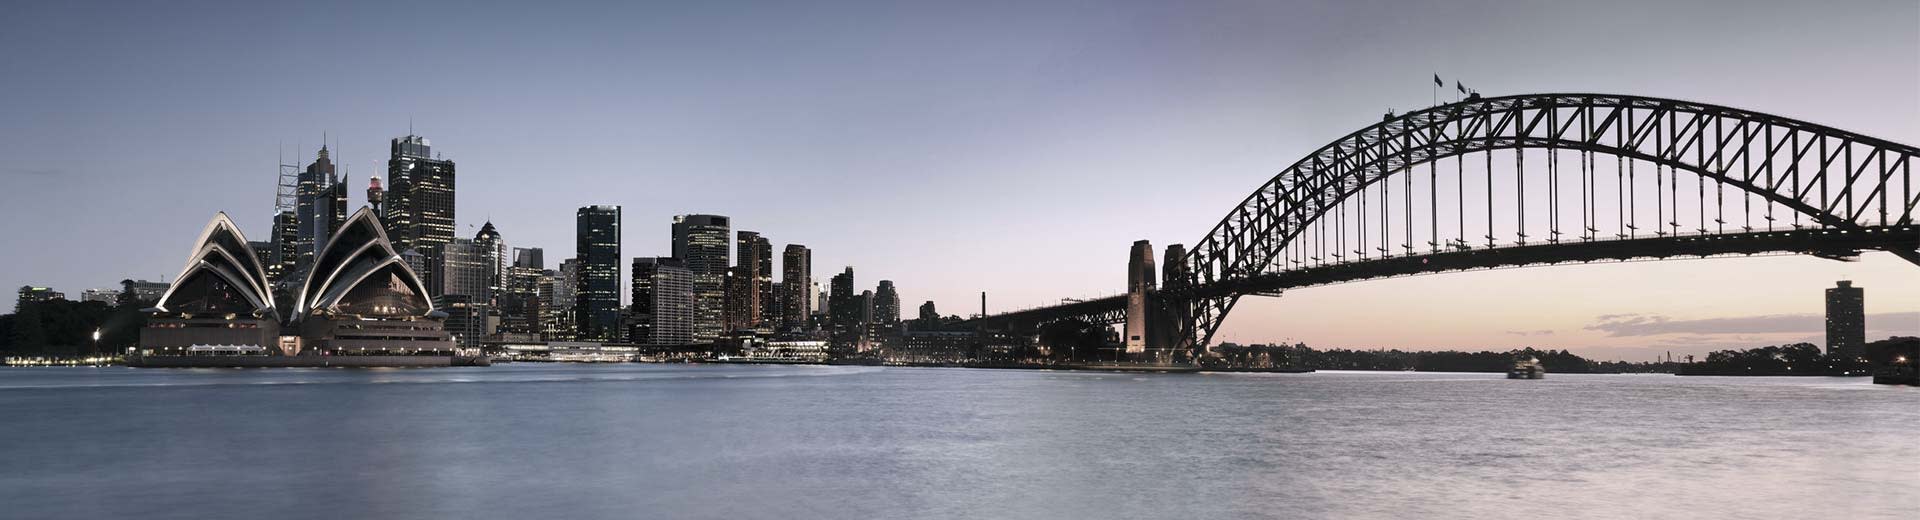 La famosa Ópera de Sydney domina esta escena, con múltiples edificios y el puente de Sydney en el lado derecho.